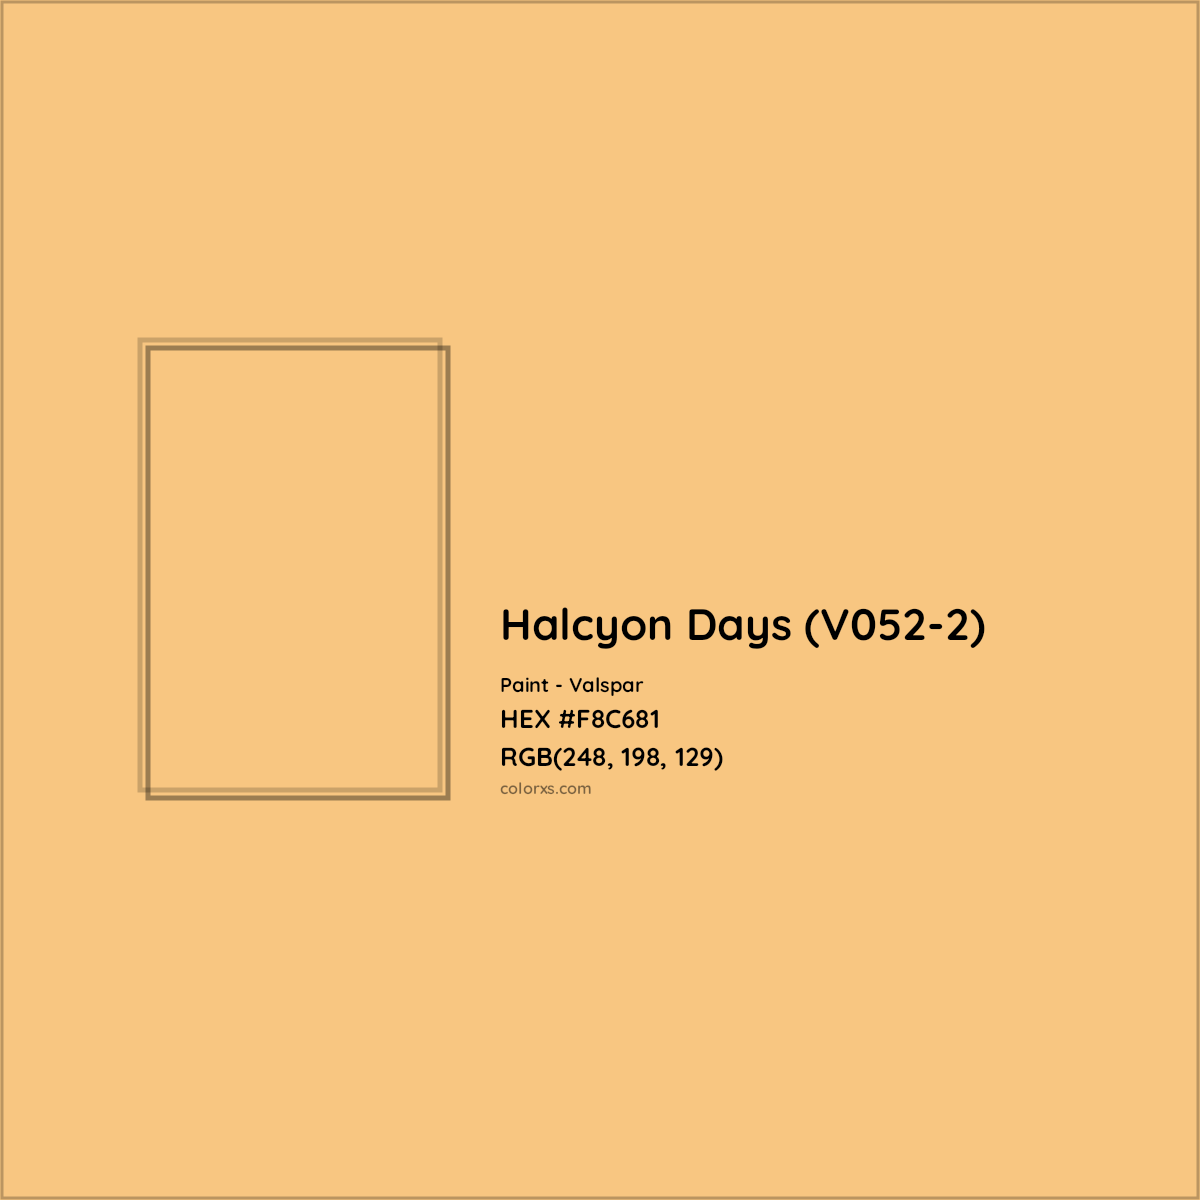 HEX #F8C681 Halcyon Days (V052-2) Paint Valspar - Color Code